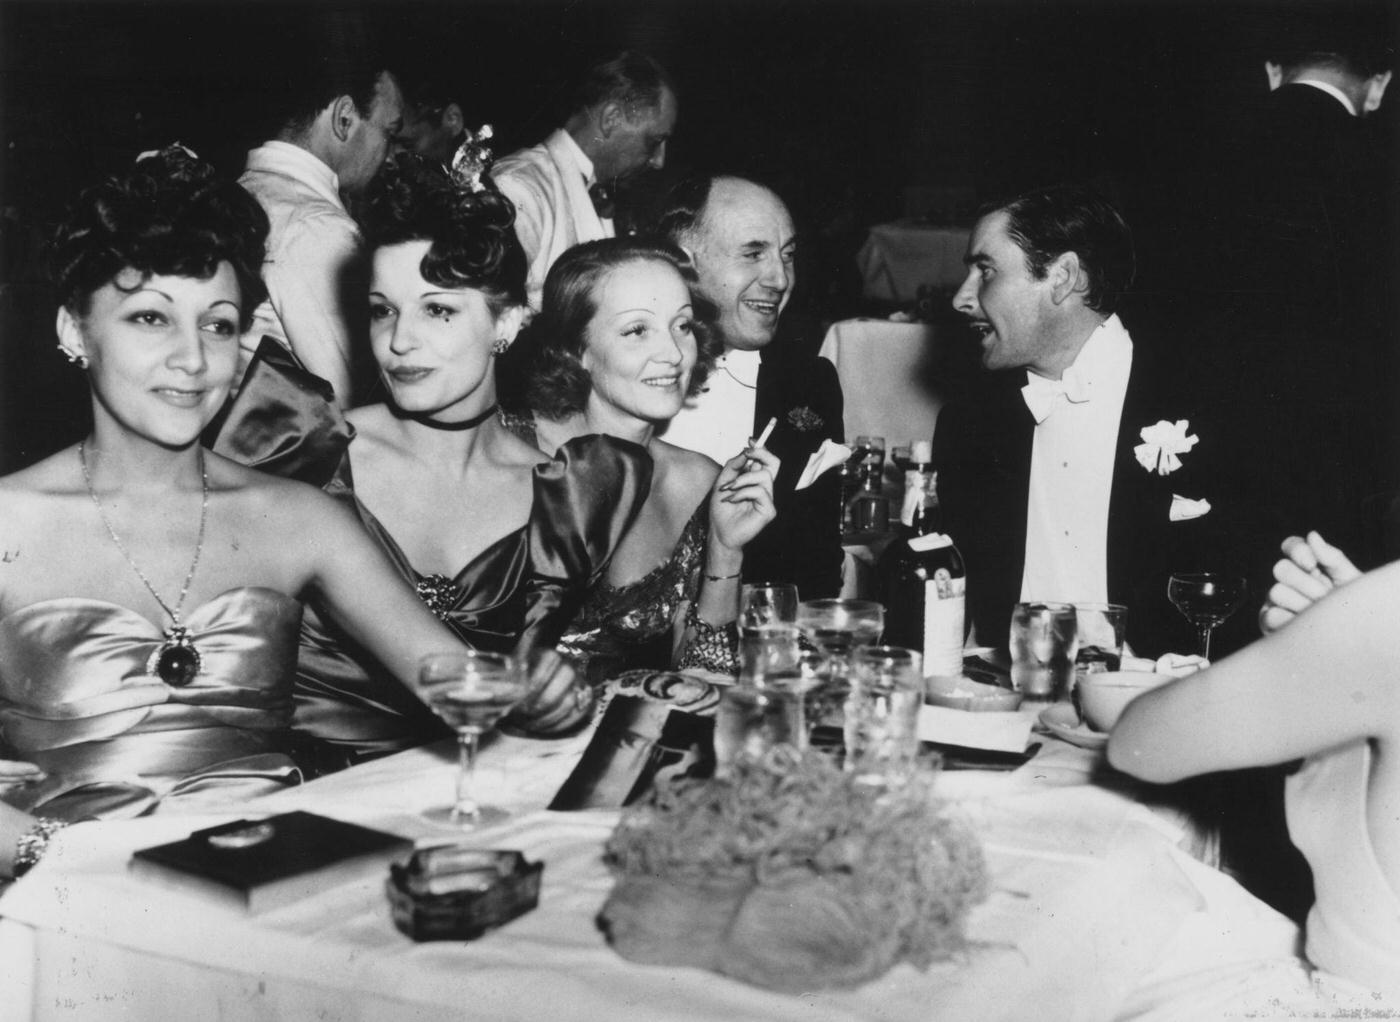 Errol Flynn, Maria Magdalena von Losch, Lili Damita, and Jack Warner are pictured with Marlene Dietrich.